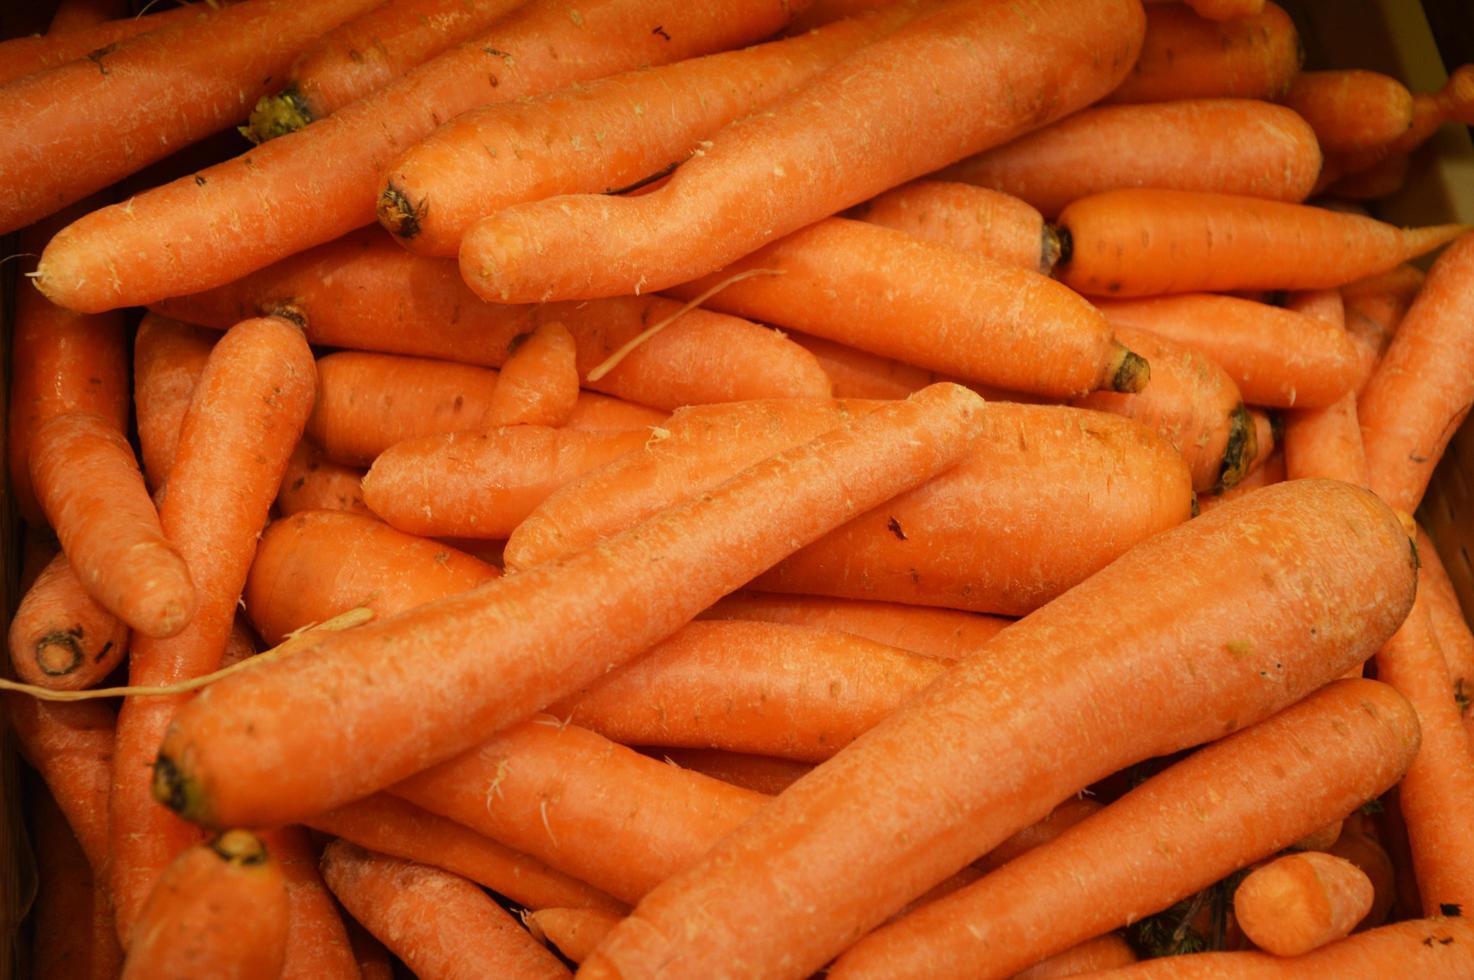 carottes orange fraîches sur le comptoir du magasin. Contexte. légumes, récolte. photo